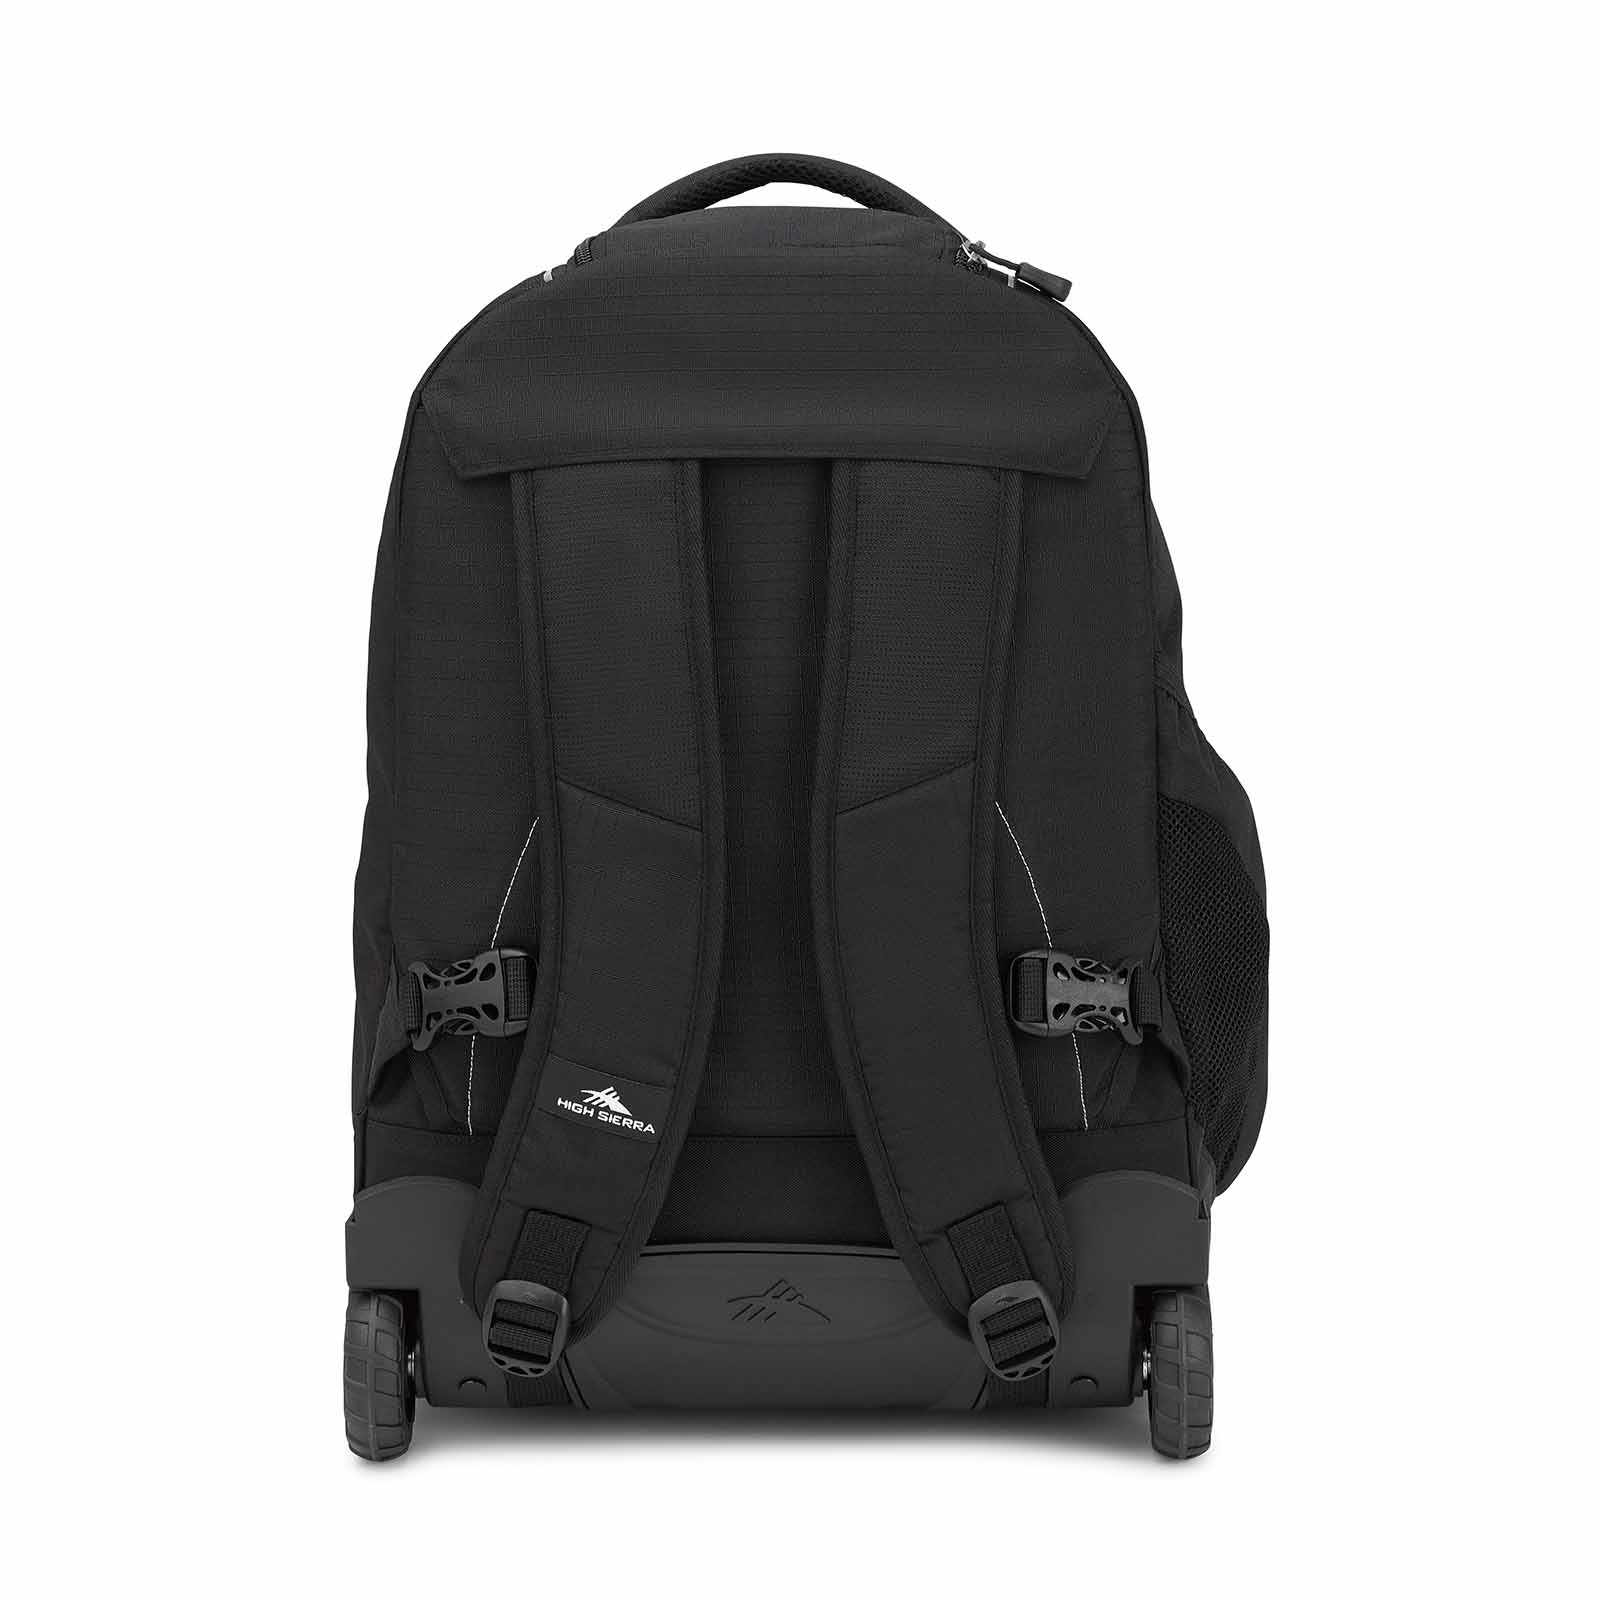    high-sierra-freewheel-wheeled-17-inch-laptop-backpack-black-back-harness